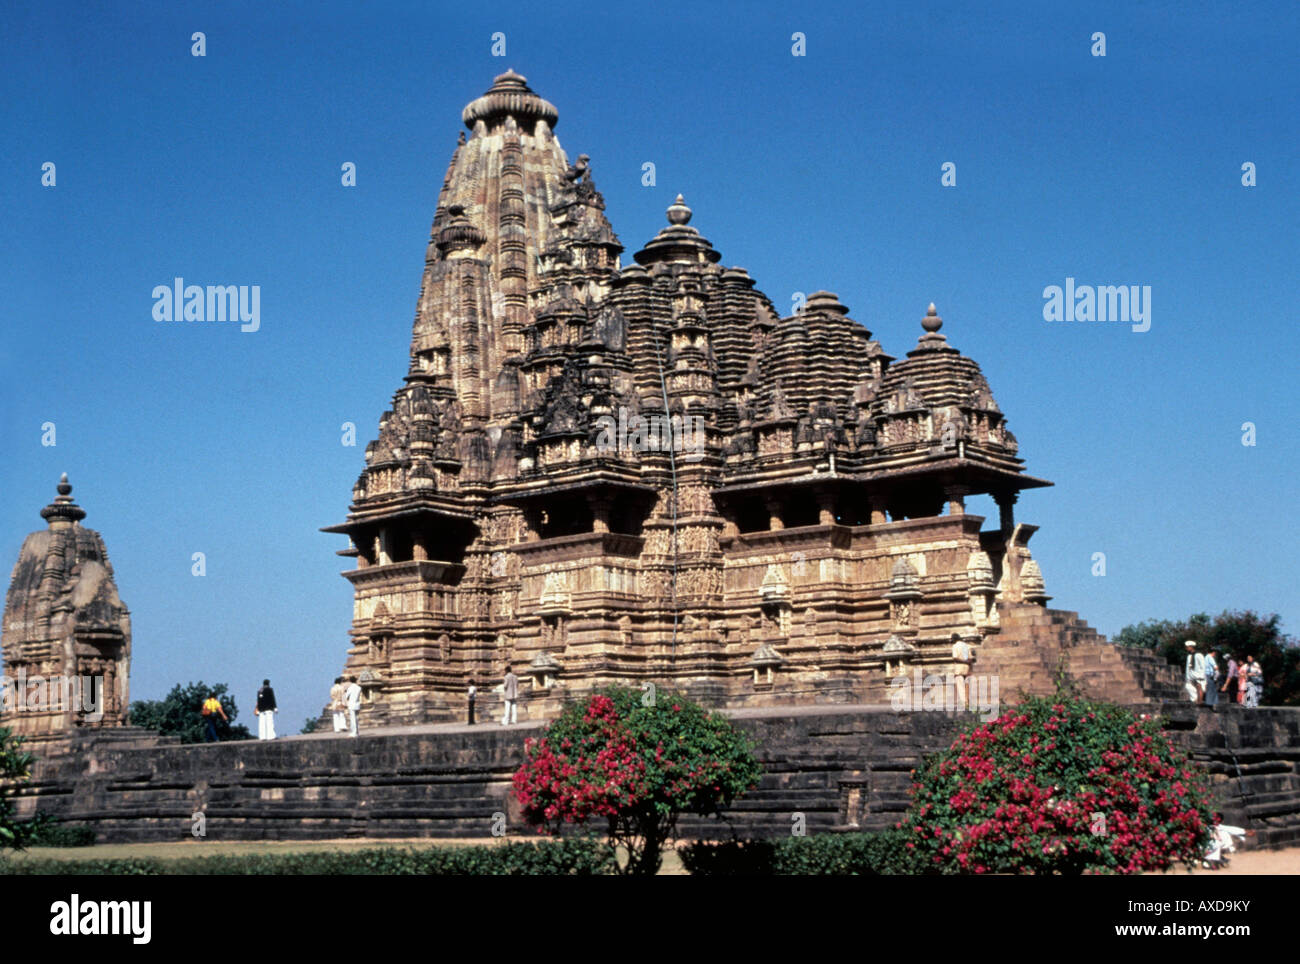 Khajuraho (Indien) Vishvanath Tempel Blick von Süd-Ost 1000 A.D. Madhya Pradesh, Indien Stockfoto